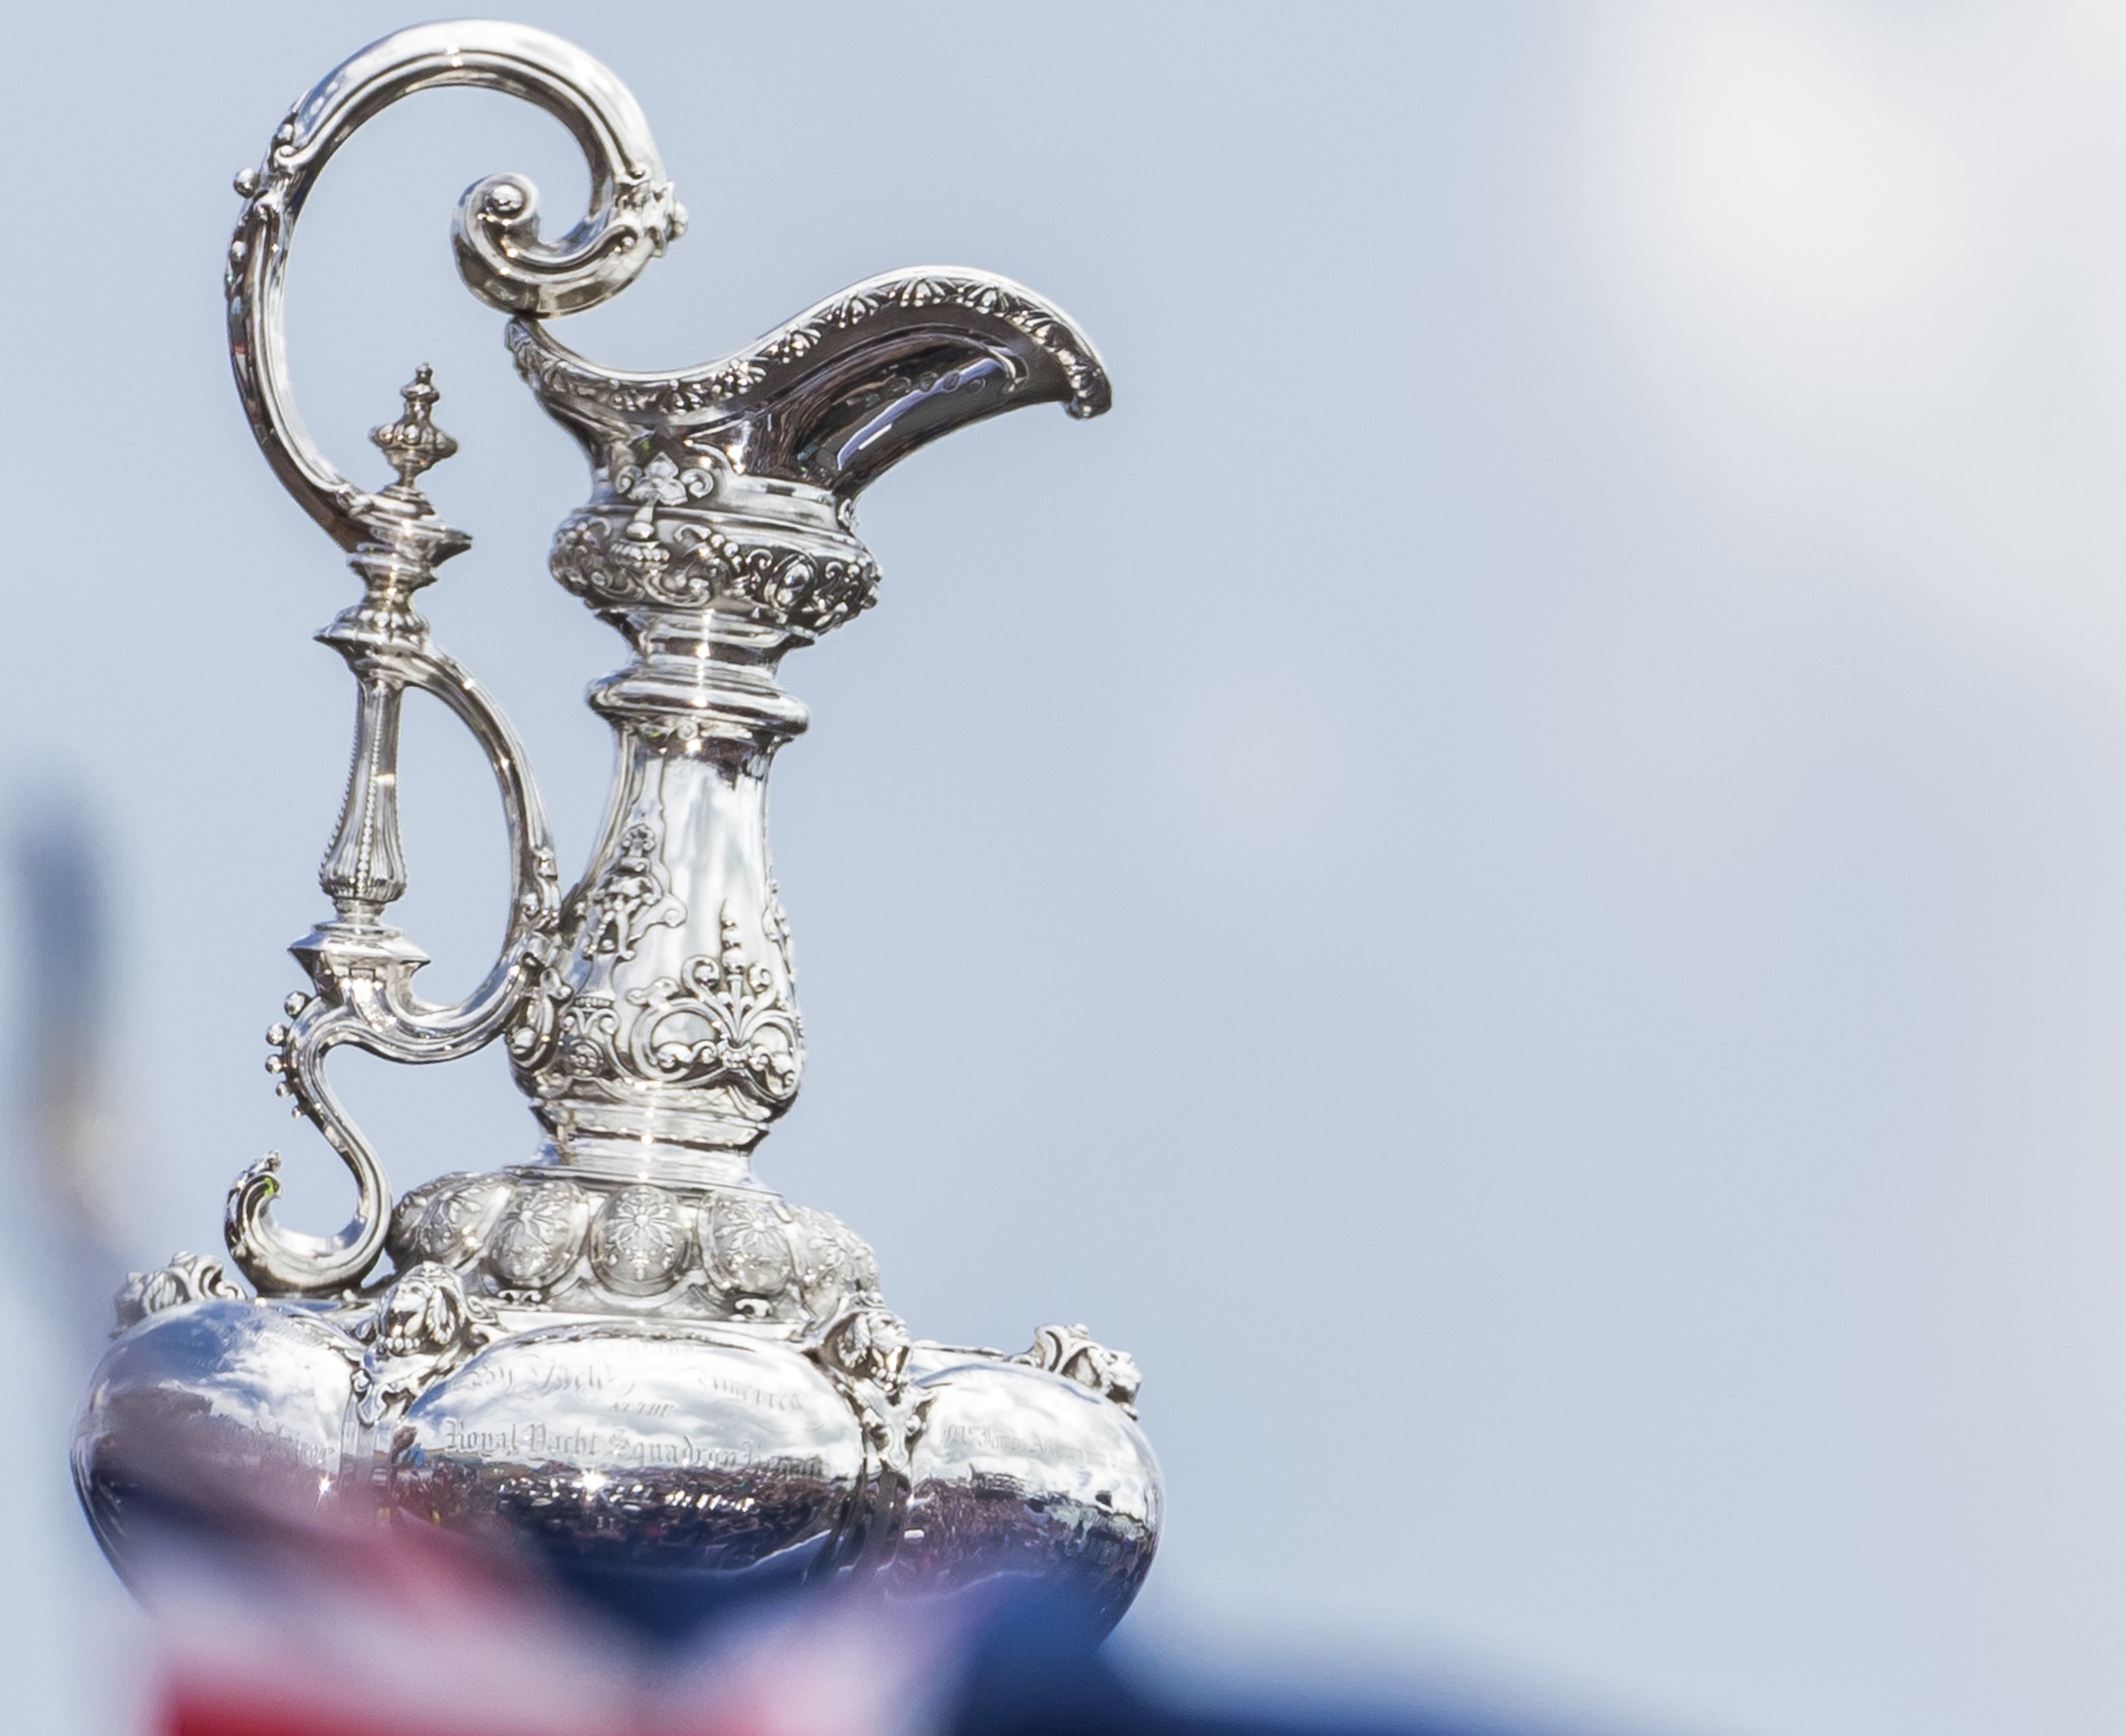 America’s Cup: i maltesi non ci sono piu’, annunciato il ritiro ufficiale di Altus Challenge